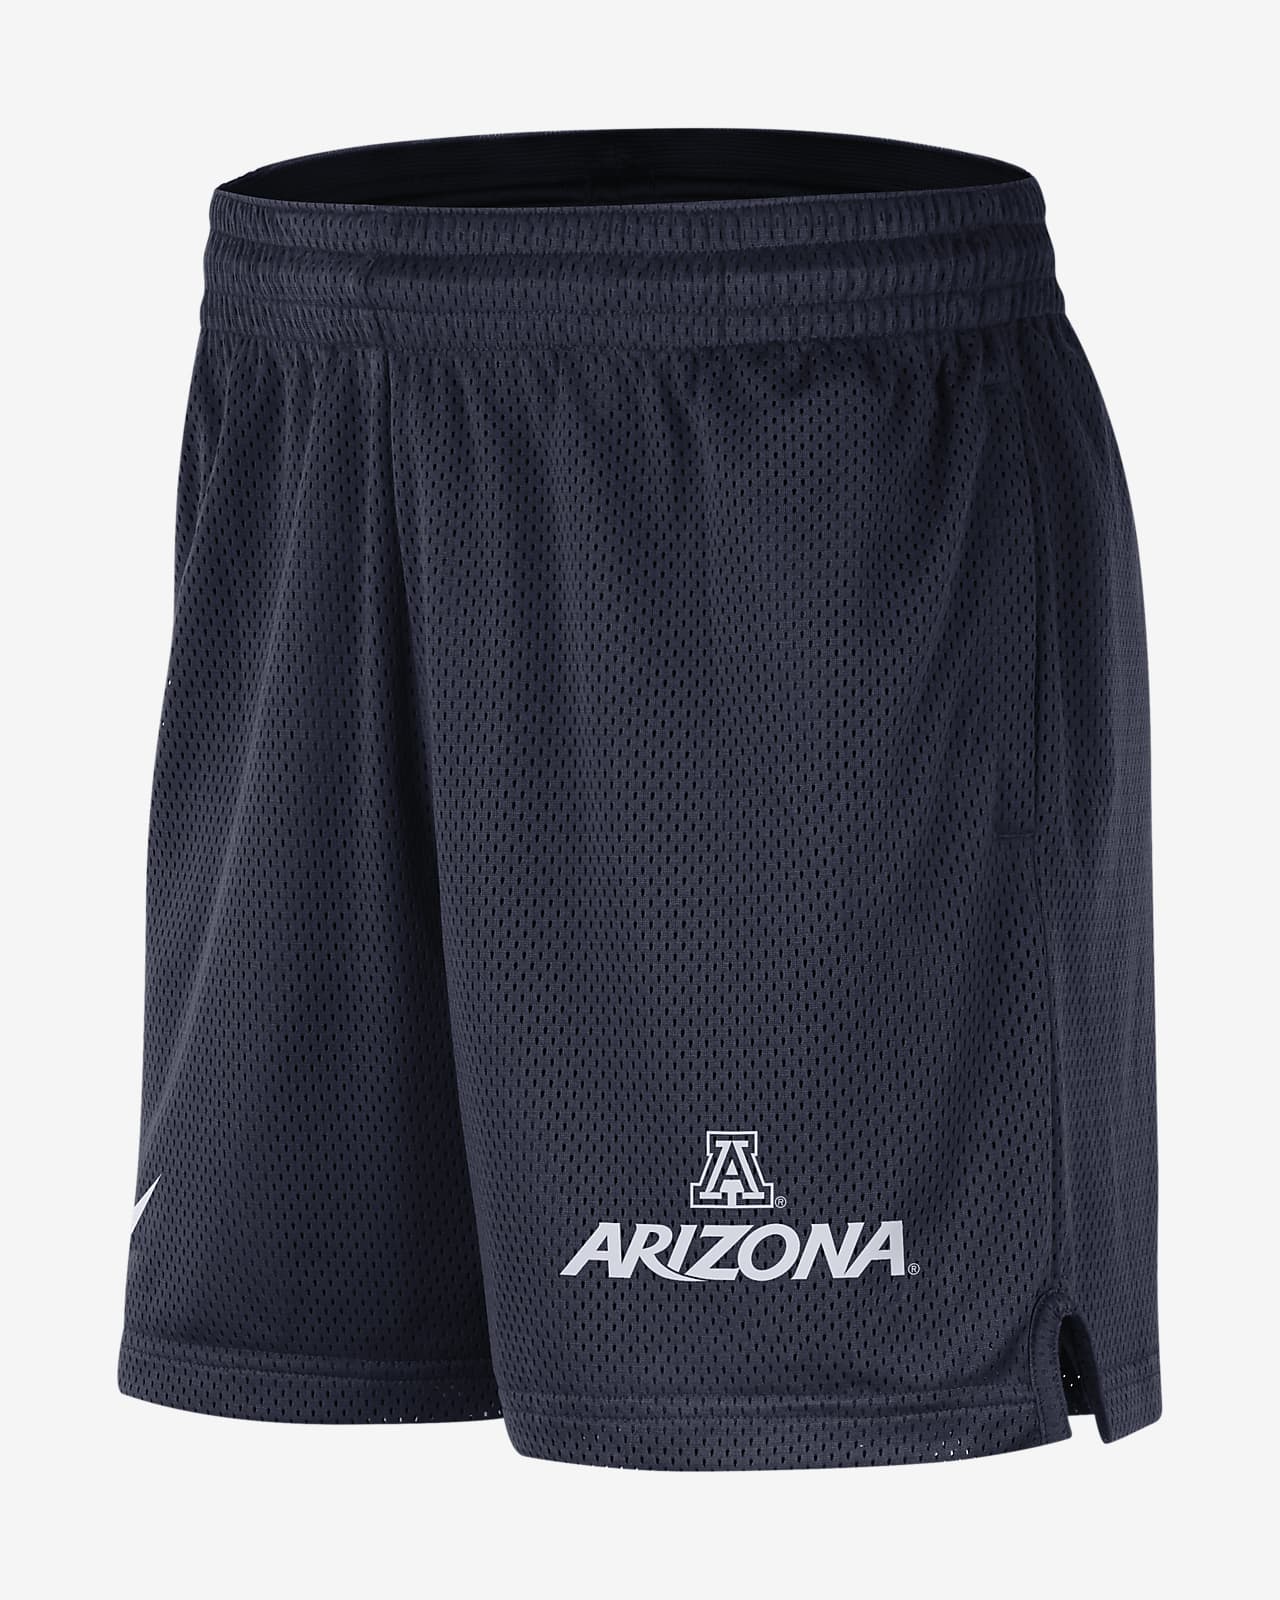 Arizona Men's Nike College Fleece Shorts.